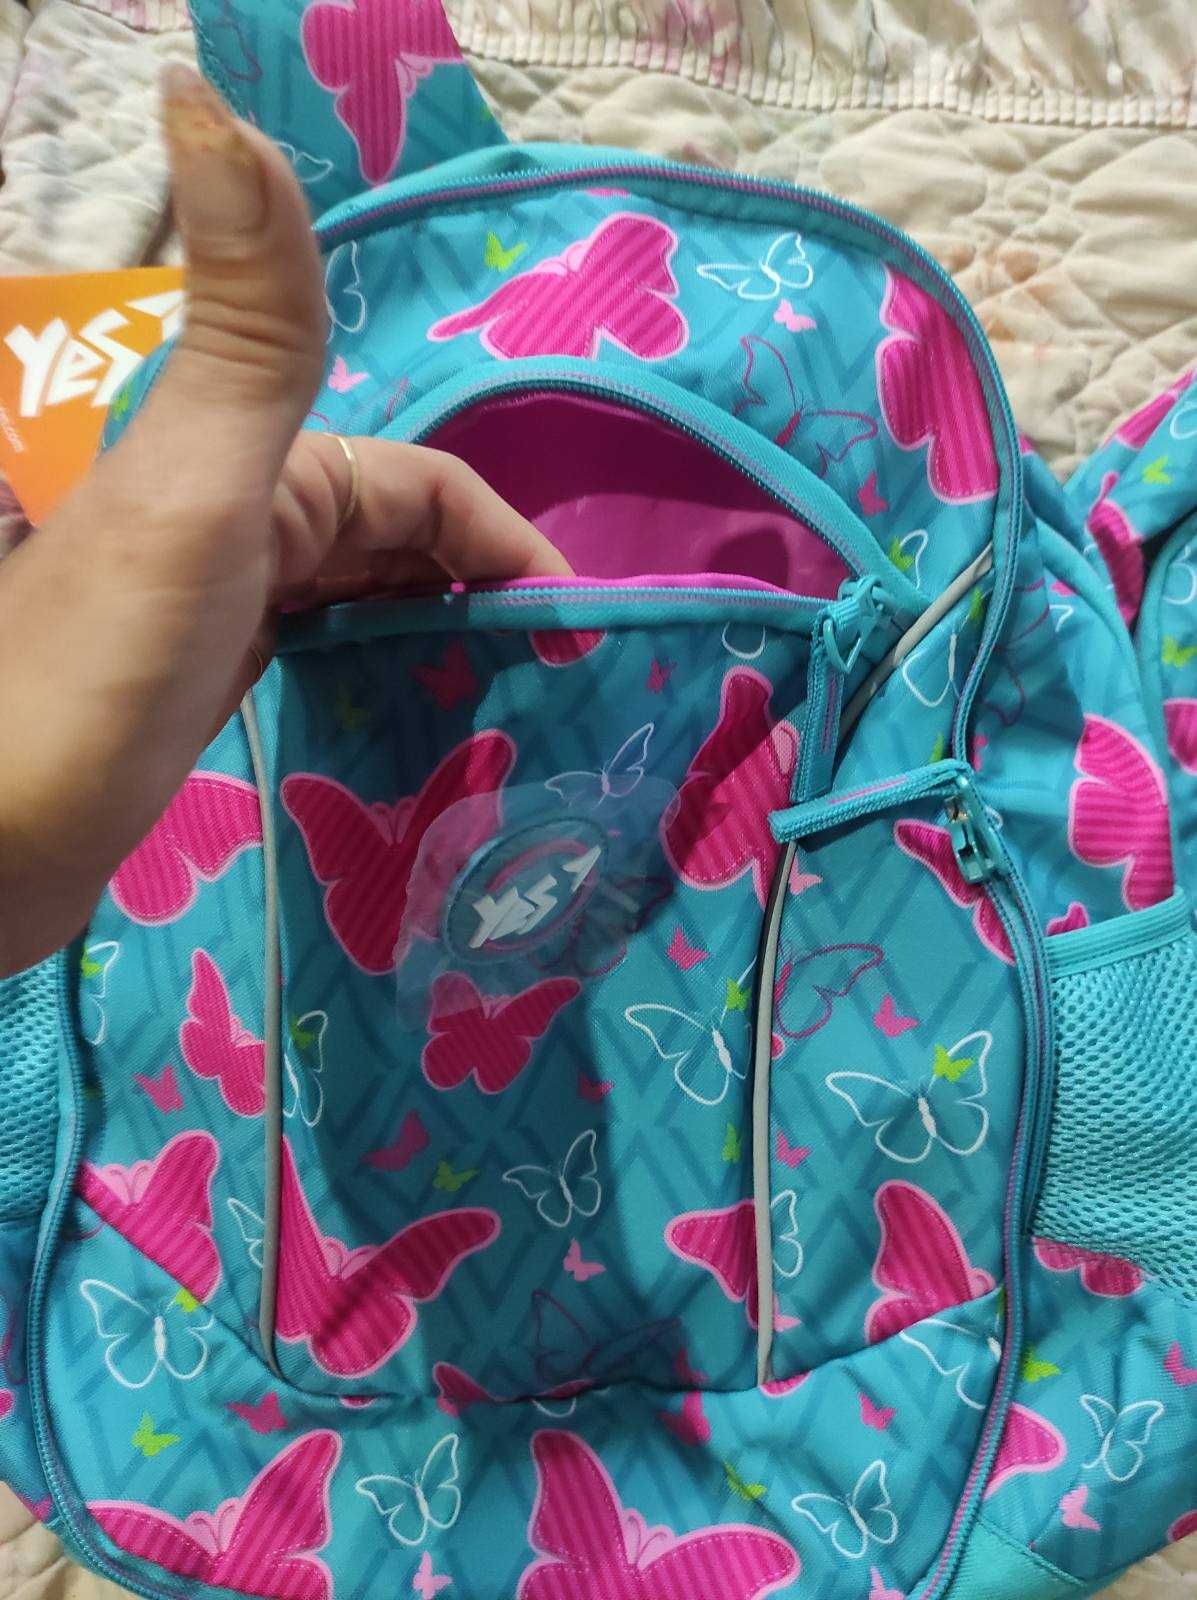 Супер яркий красочный школьный рюкзак два в одном младшие классы